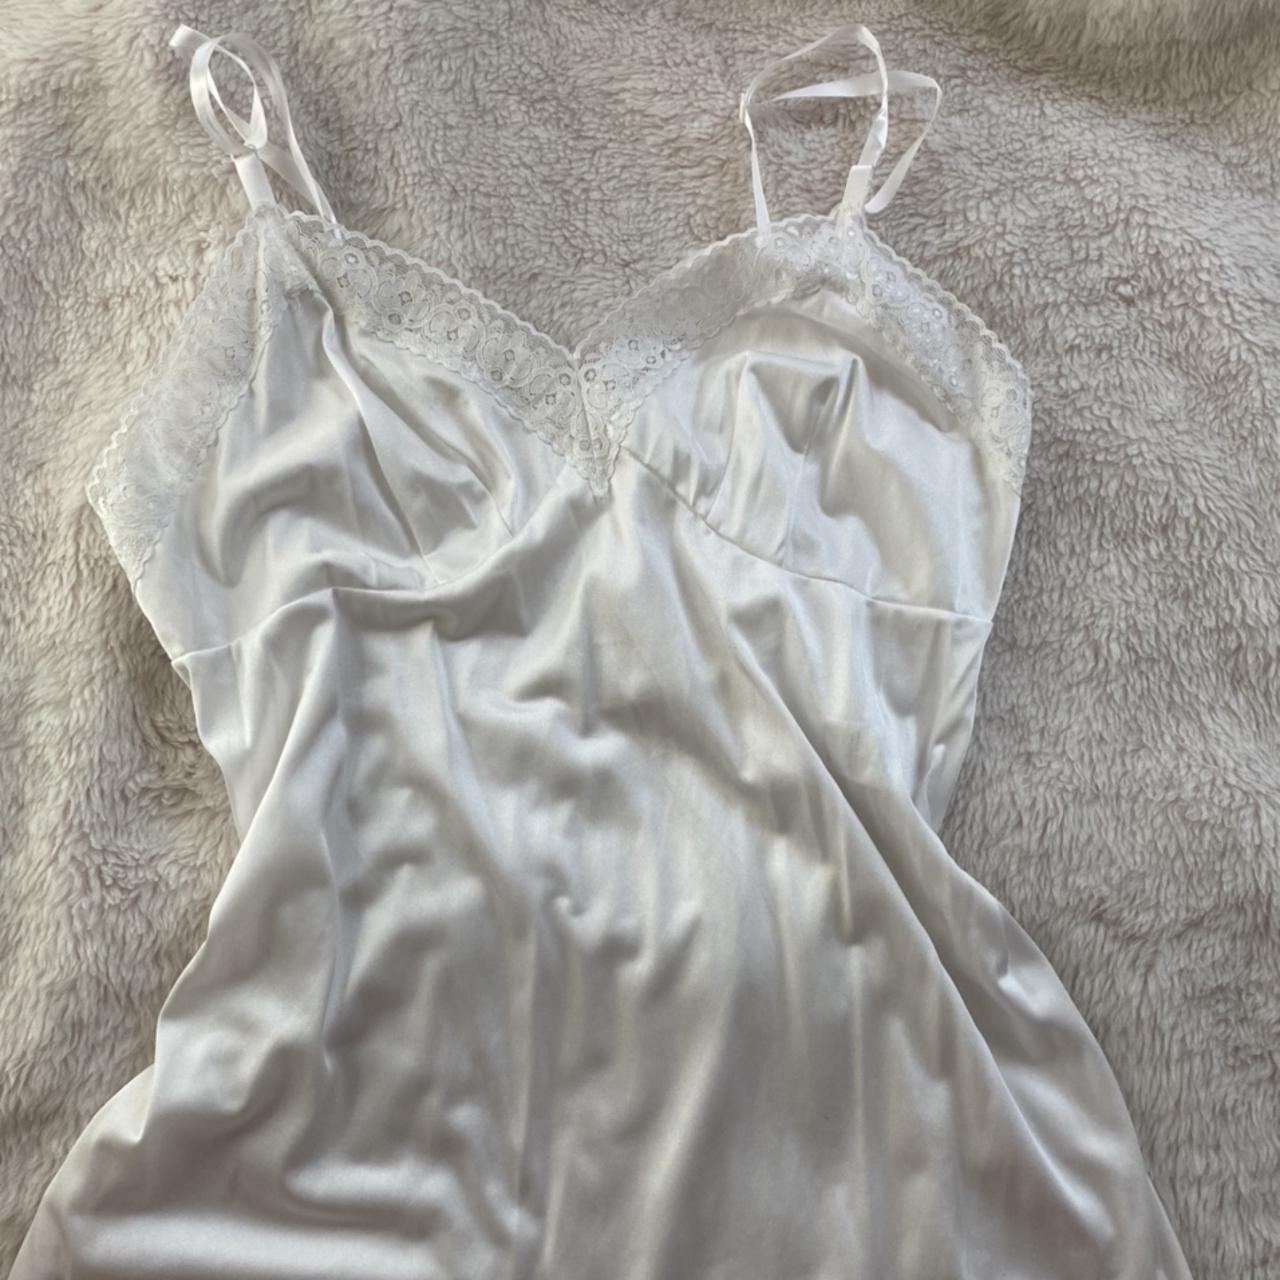 White satin lingerie slip dress 🕊 This is a lovely... - Depop